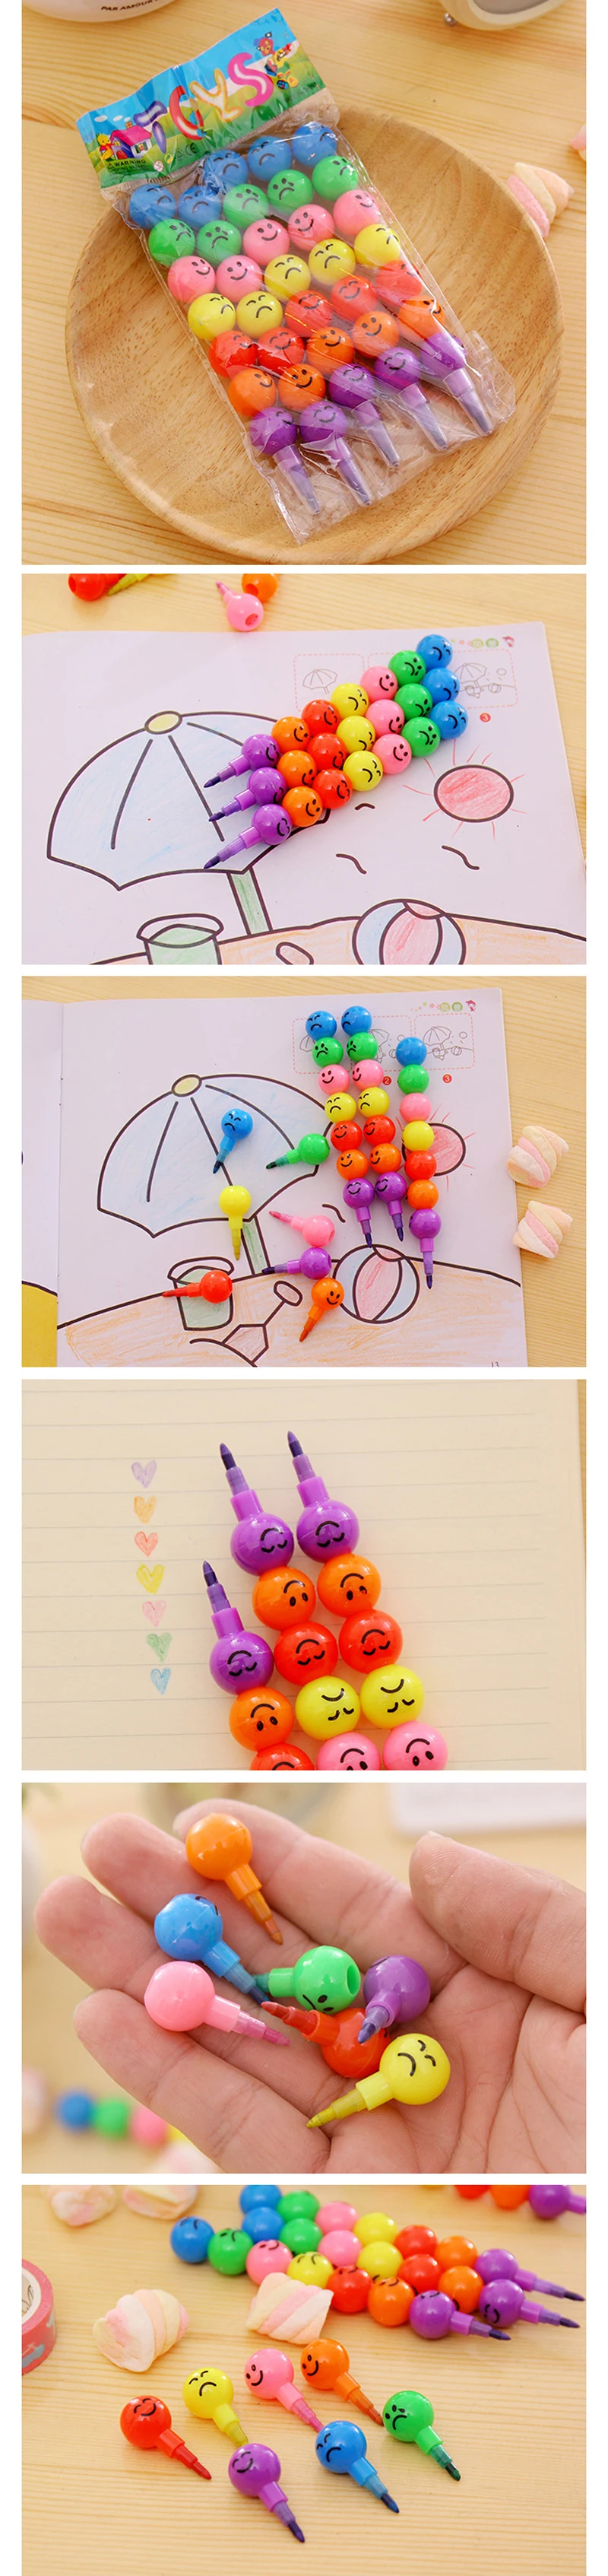 BalleenShiny 5 шт. восковой карандаш с рисунком героев мультфильмов детские игрушки для рисования граффити для детей креативный карандаш для сахарной тыквы